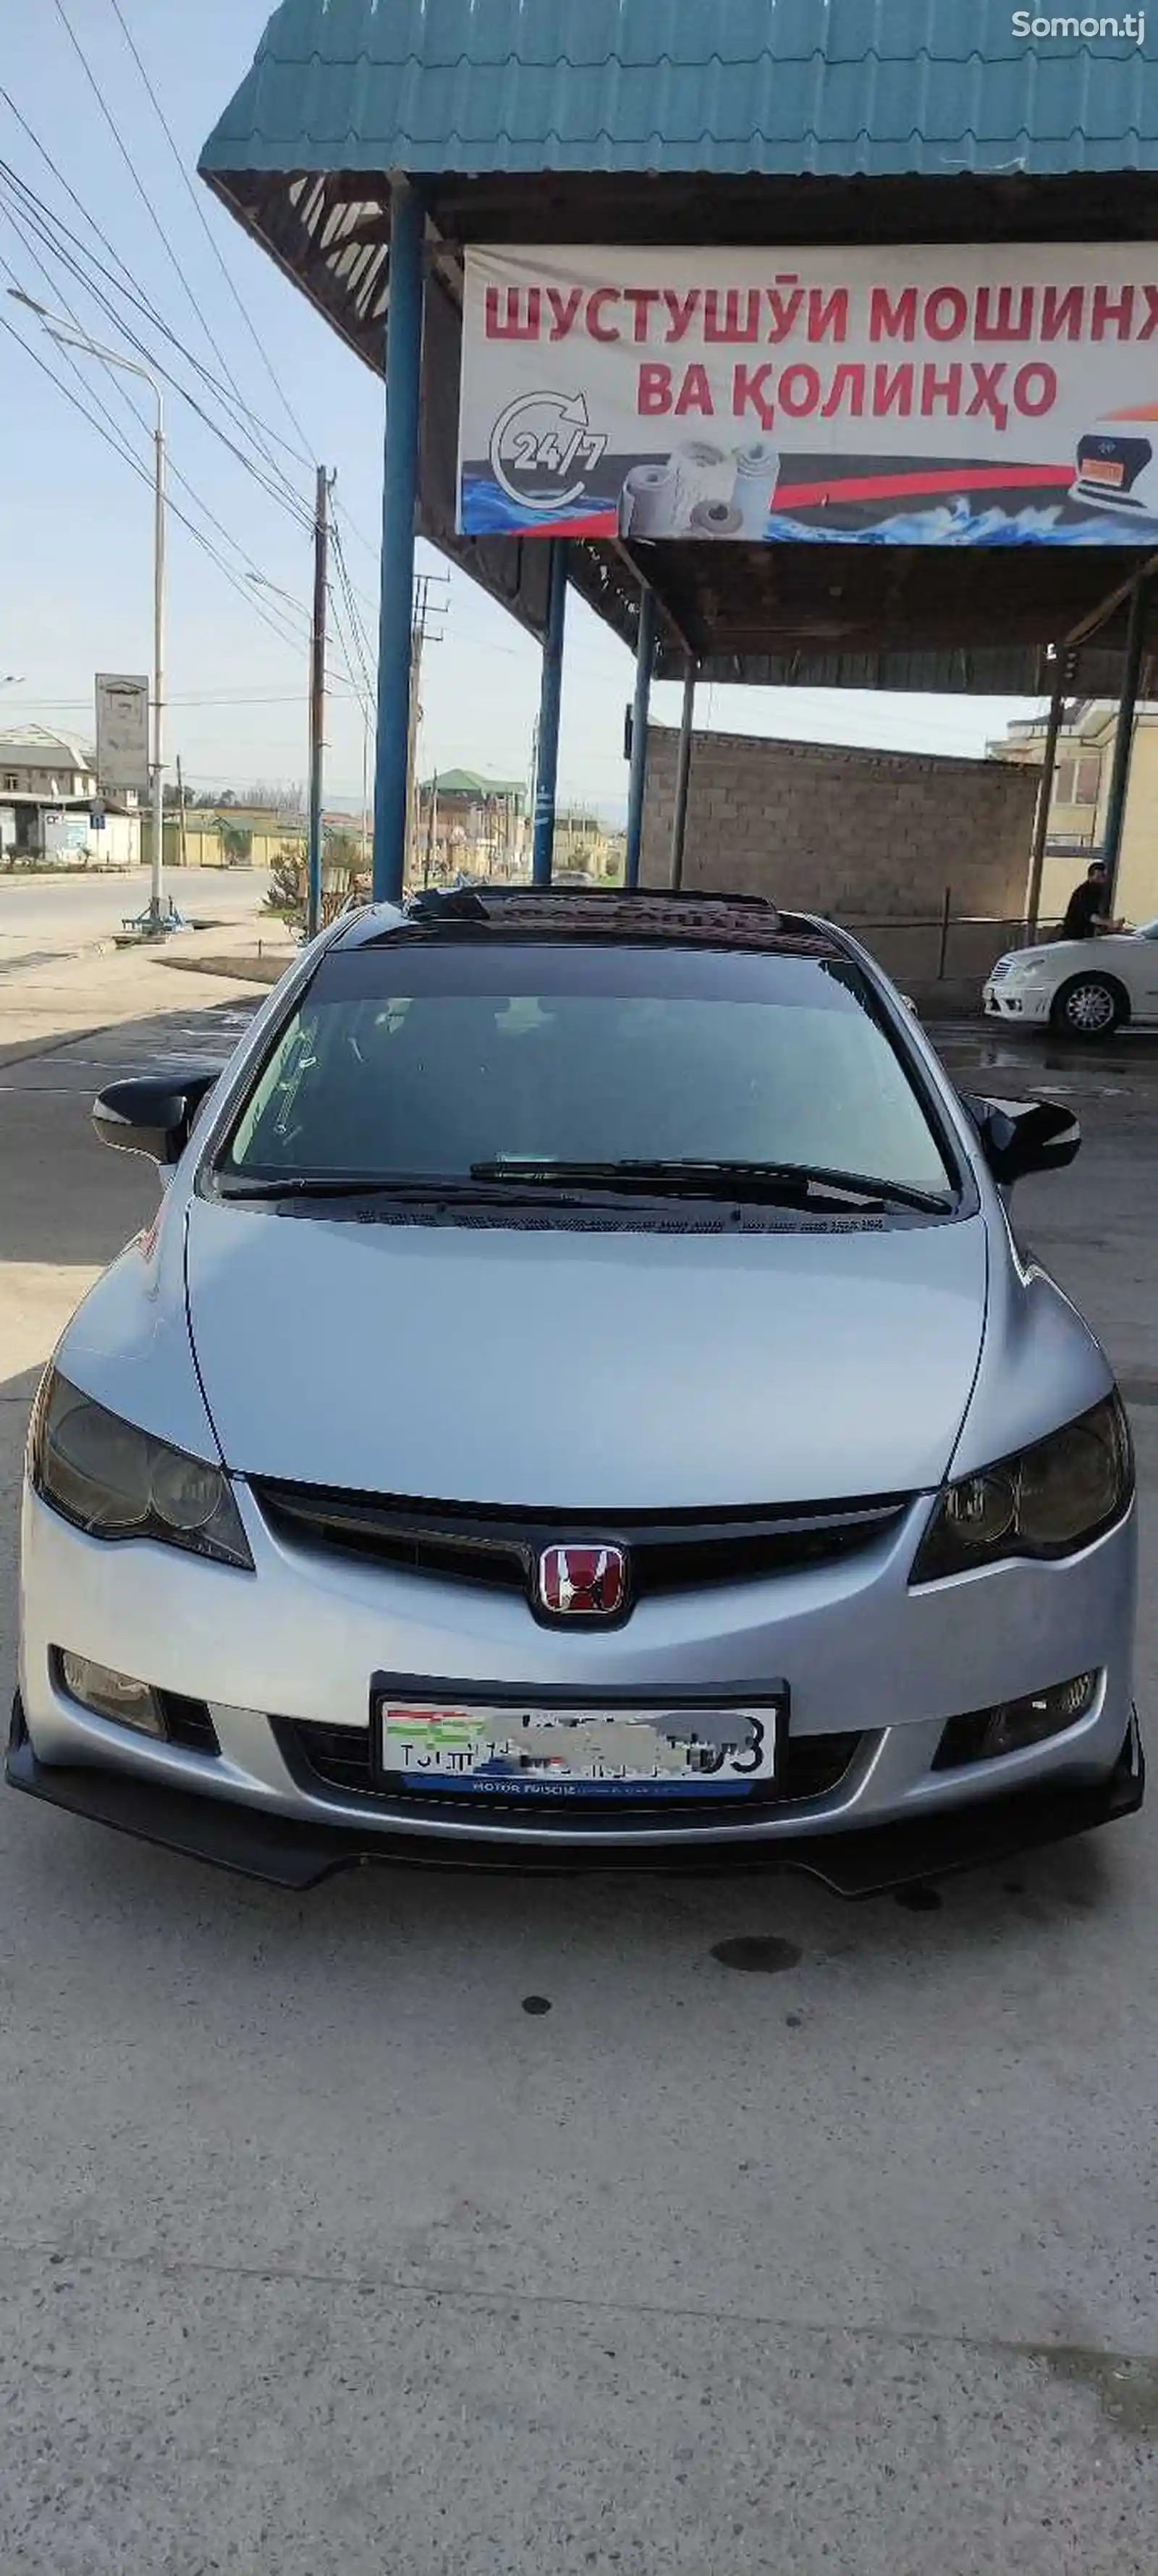 Honda Civic, 2010-2